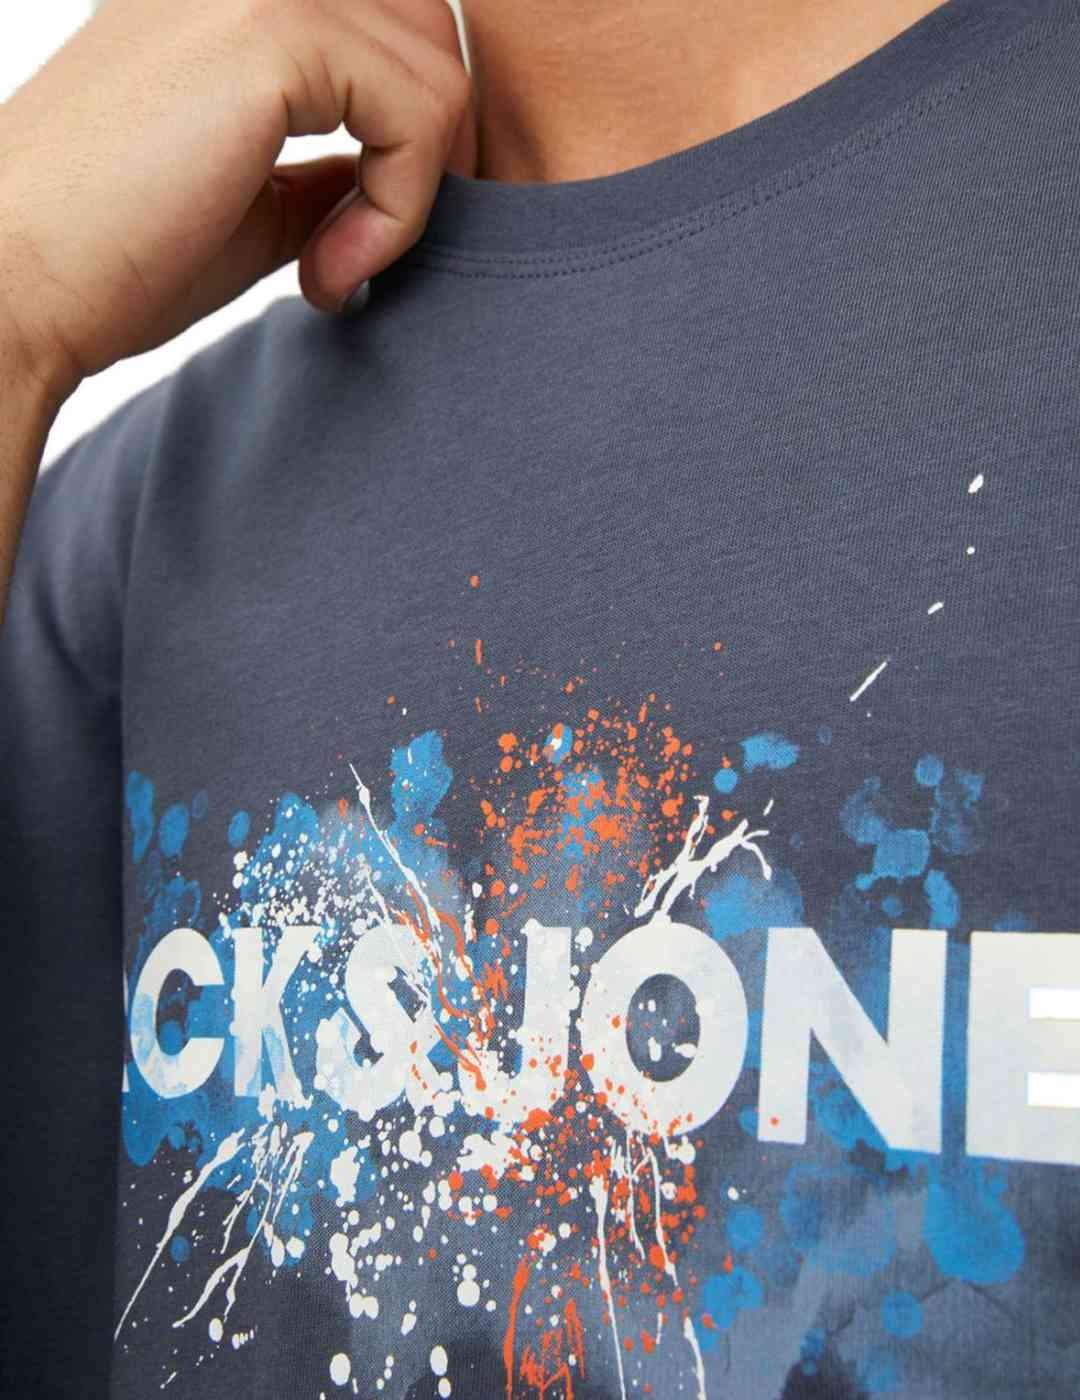 Camiseta Jack&Jones Tear azul para hombre -b